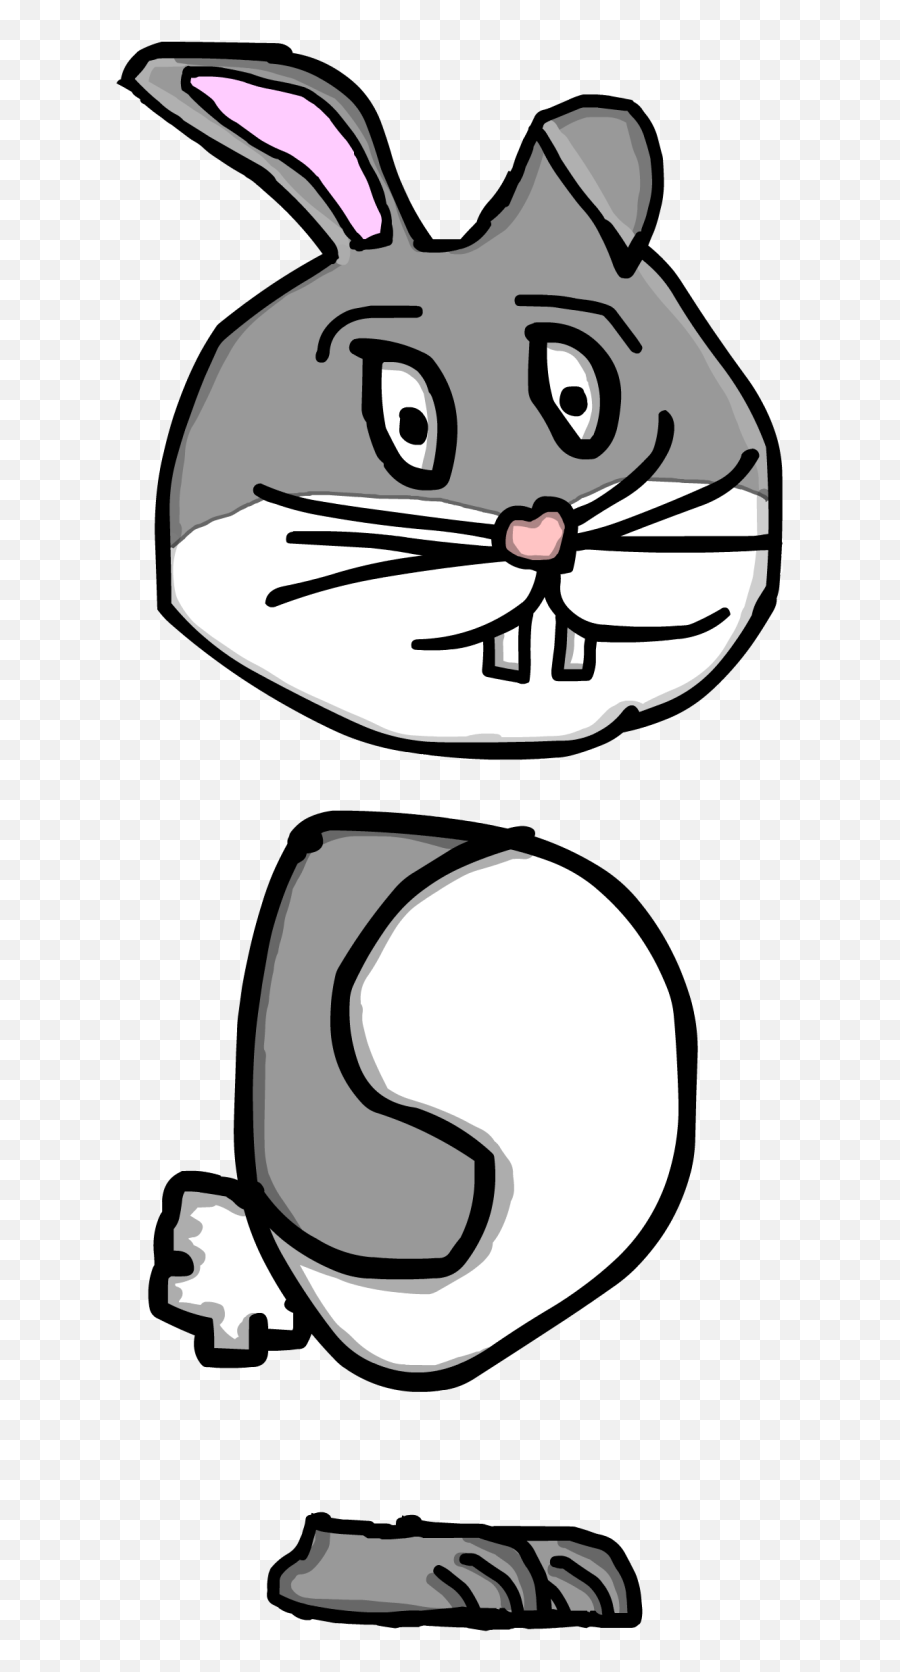 Drawing - Clip Art Library Emoji,Poliece Cat Emoticon